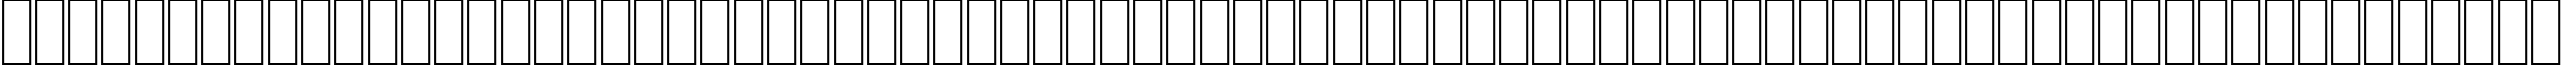 Пример написания английского алфавита шрифтом AGA Kaleelah Regular